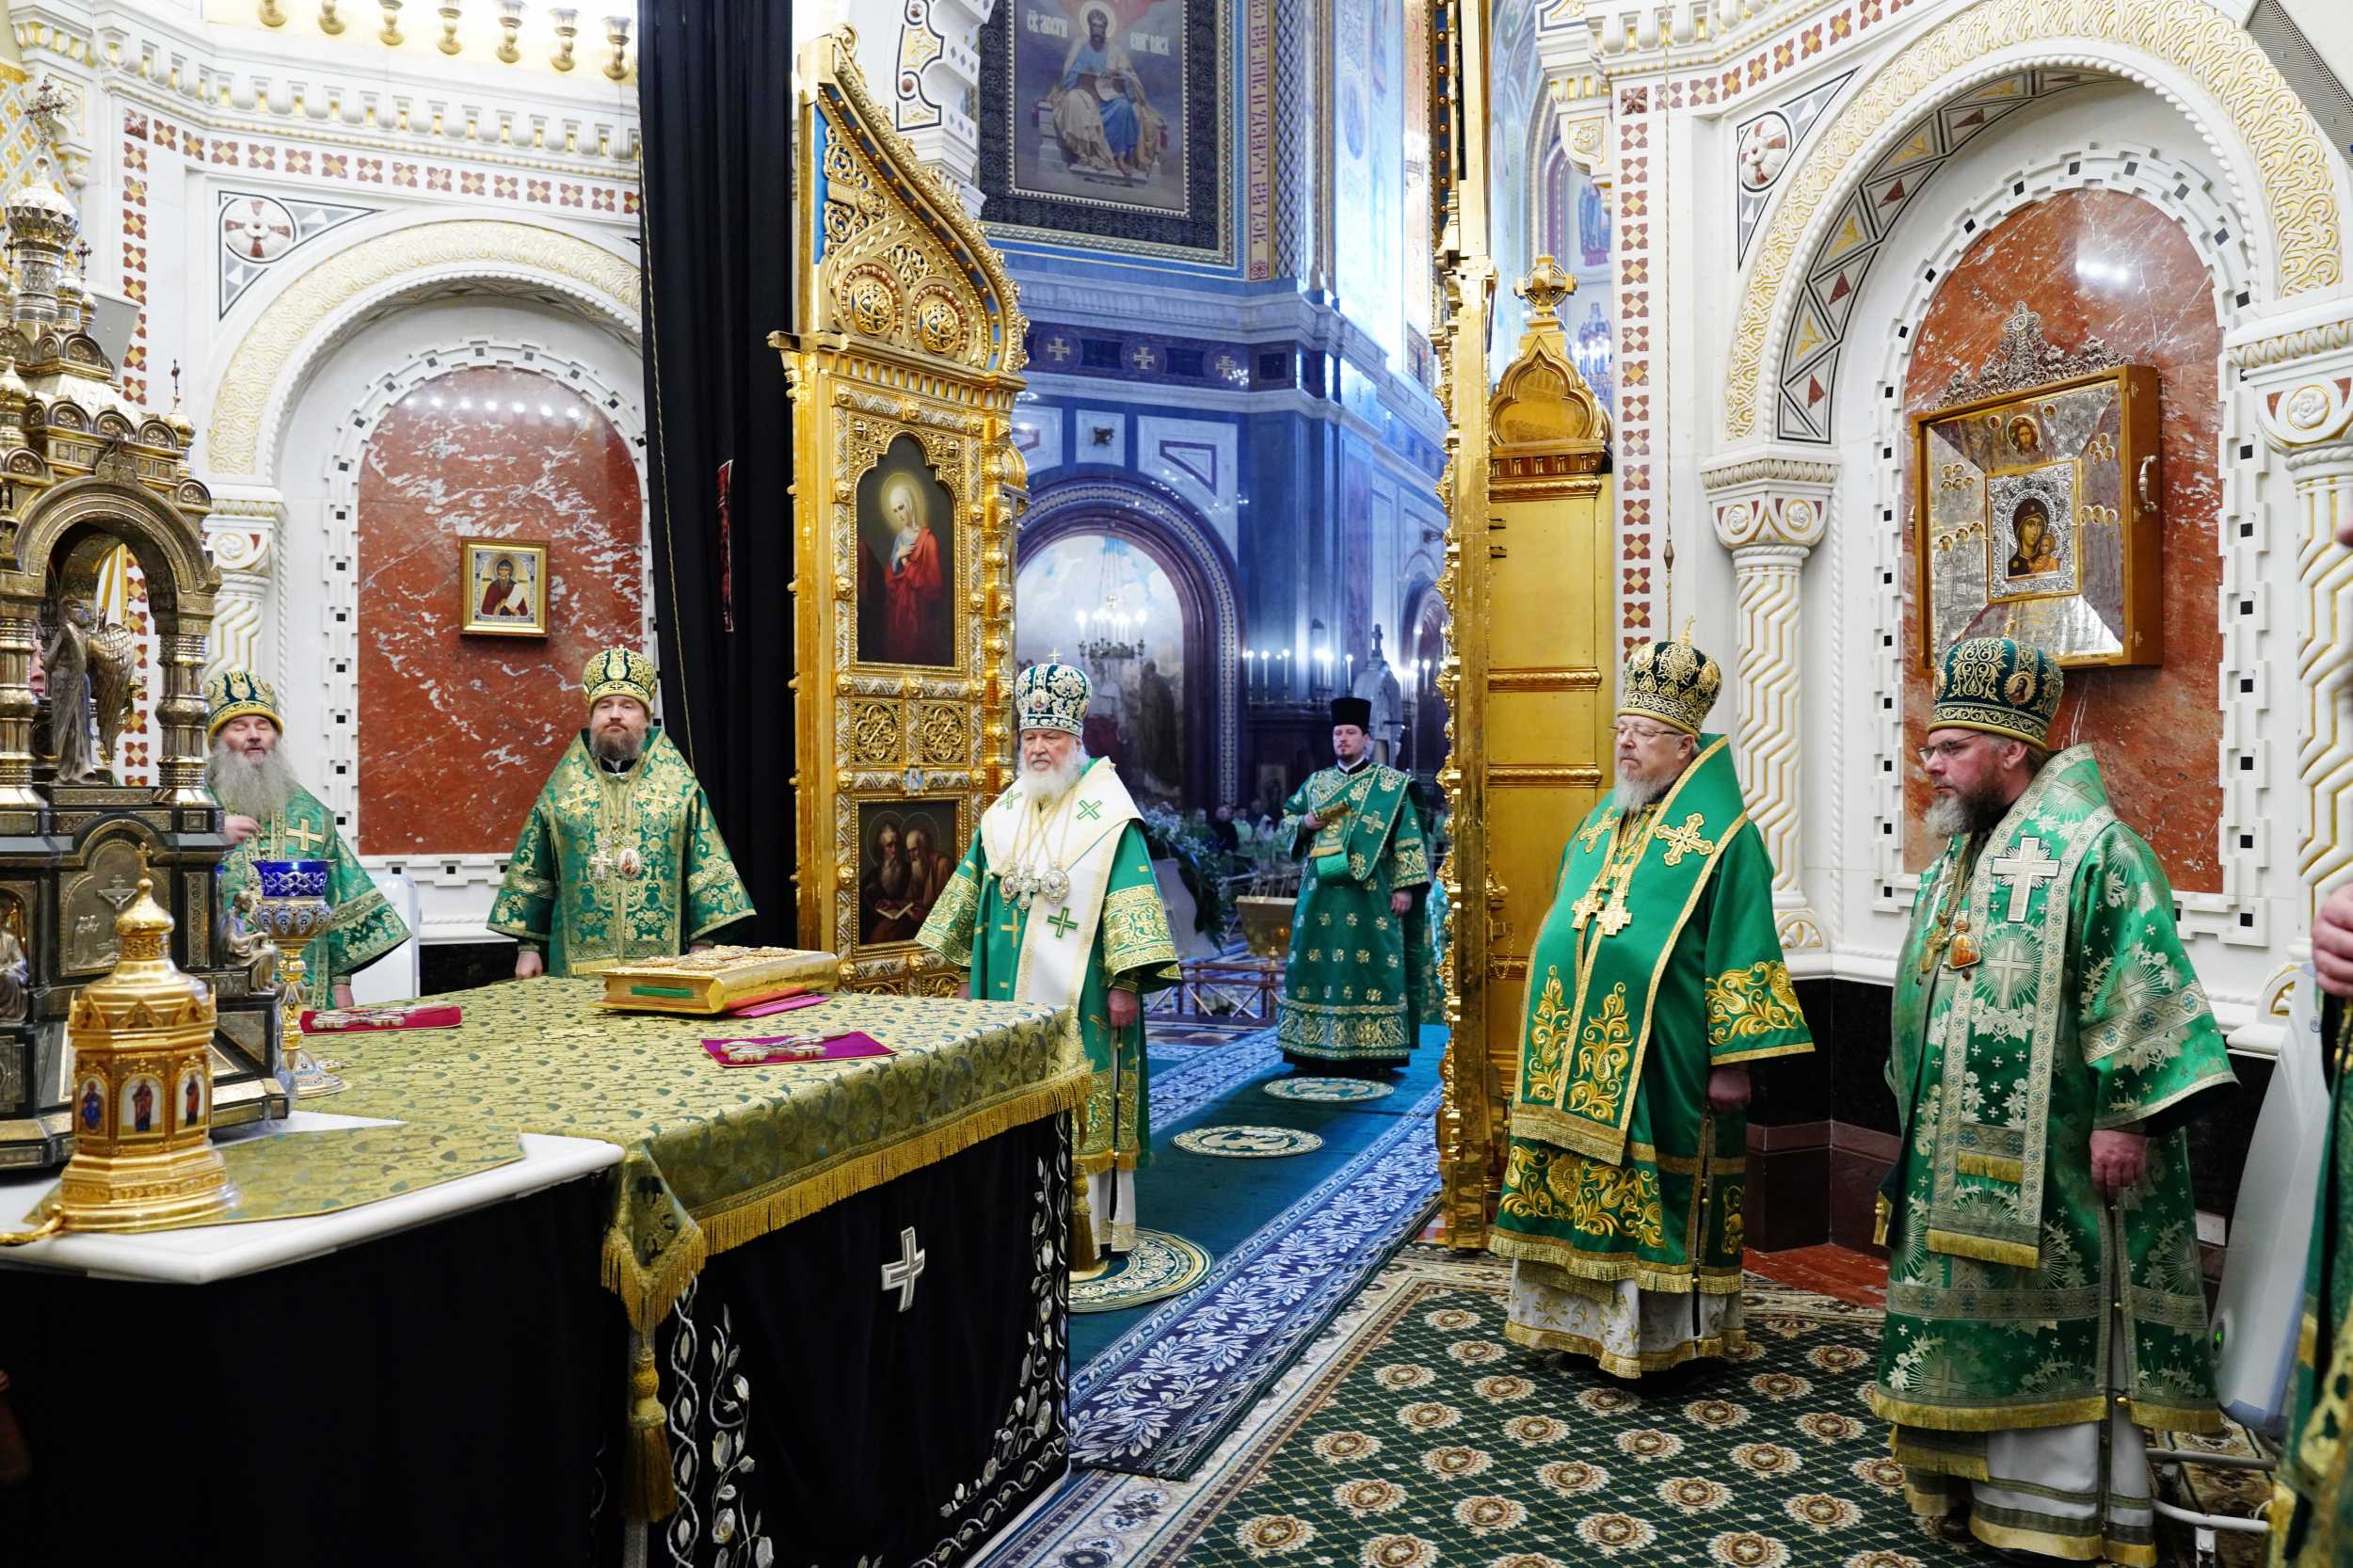 Митрополит Пантелеимон сослужил за Литургией Патриарху Кириллу в праздник Входа Господня в Иерусалим